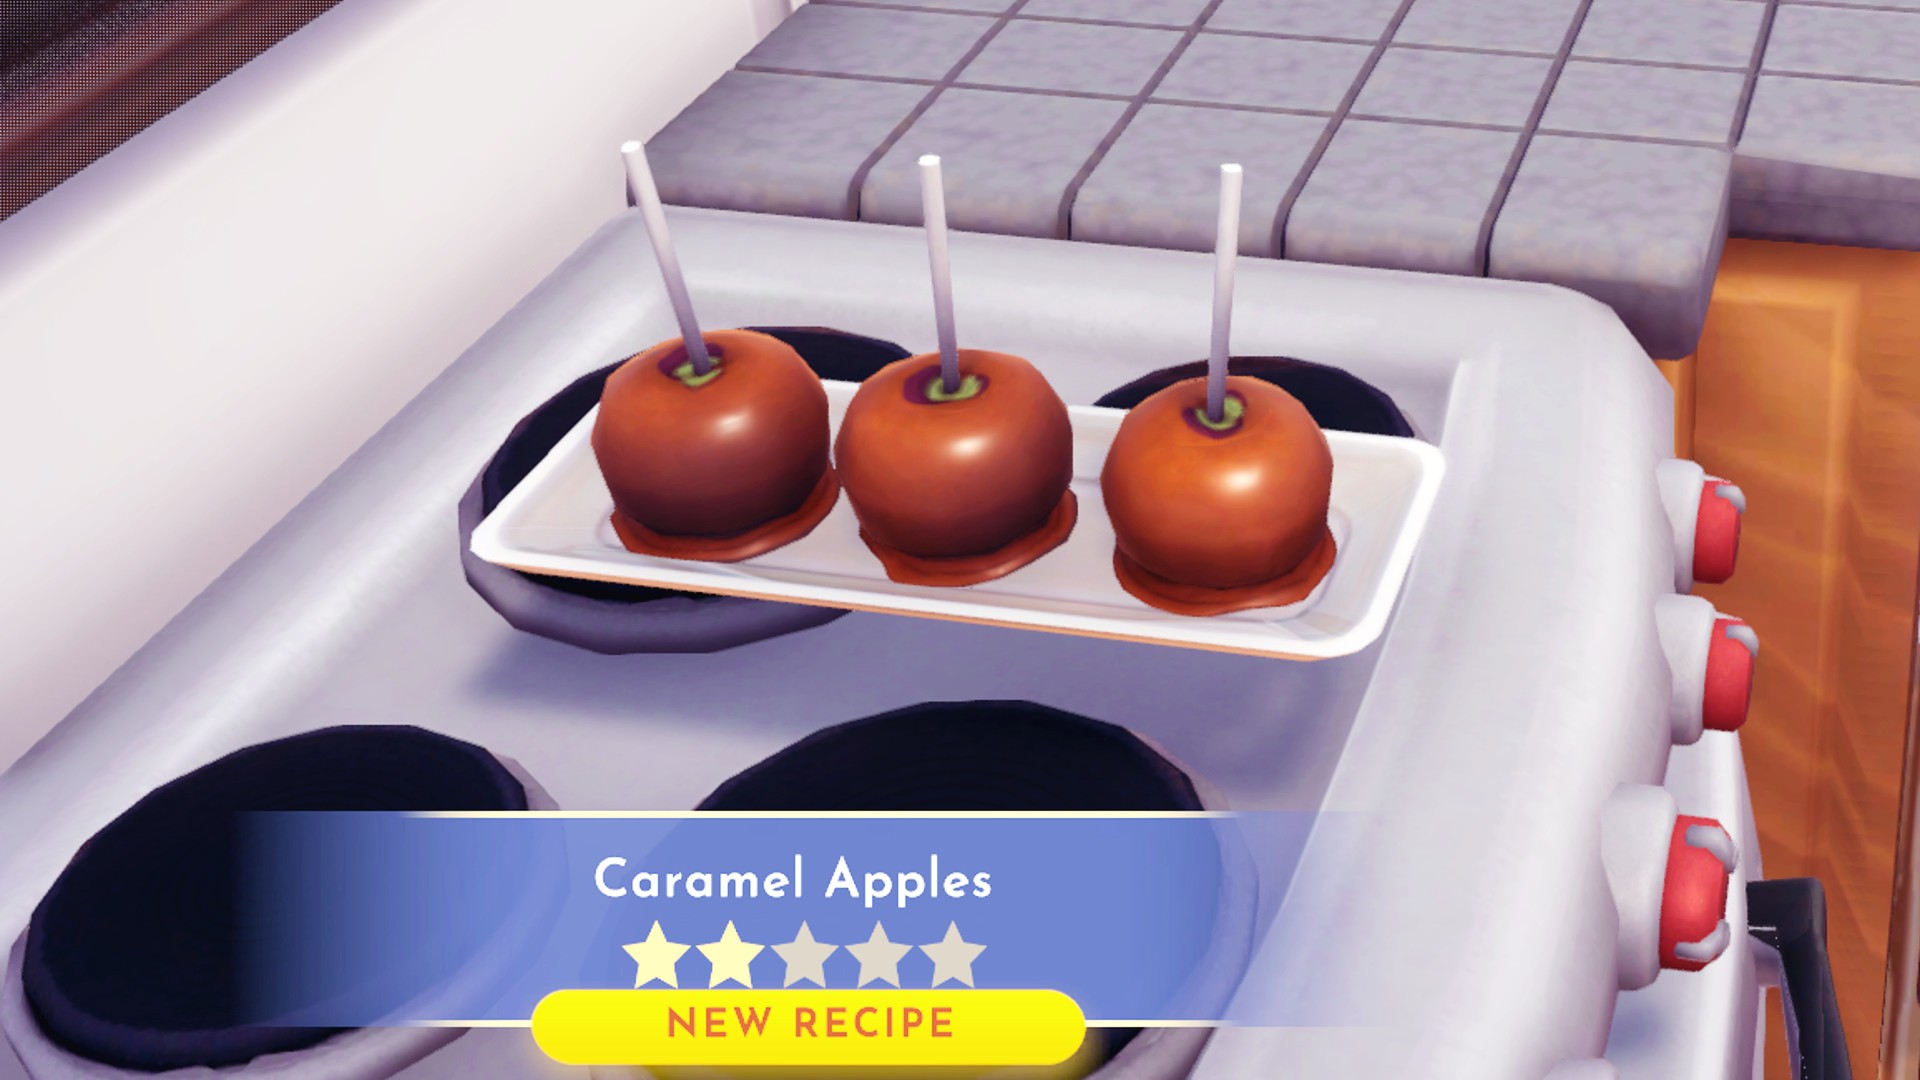 Disney Dreamlight Valley Desserts: Drei Karamelläpfel sitzen auf einem Teller und demonstrieren das Zwei-Sterne-Rezept